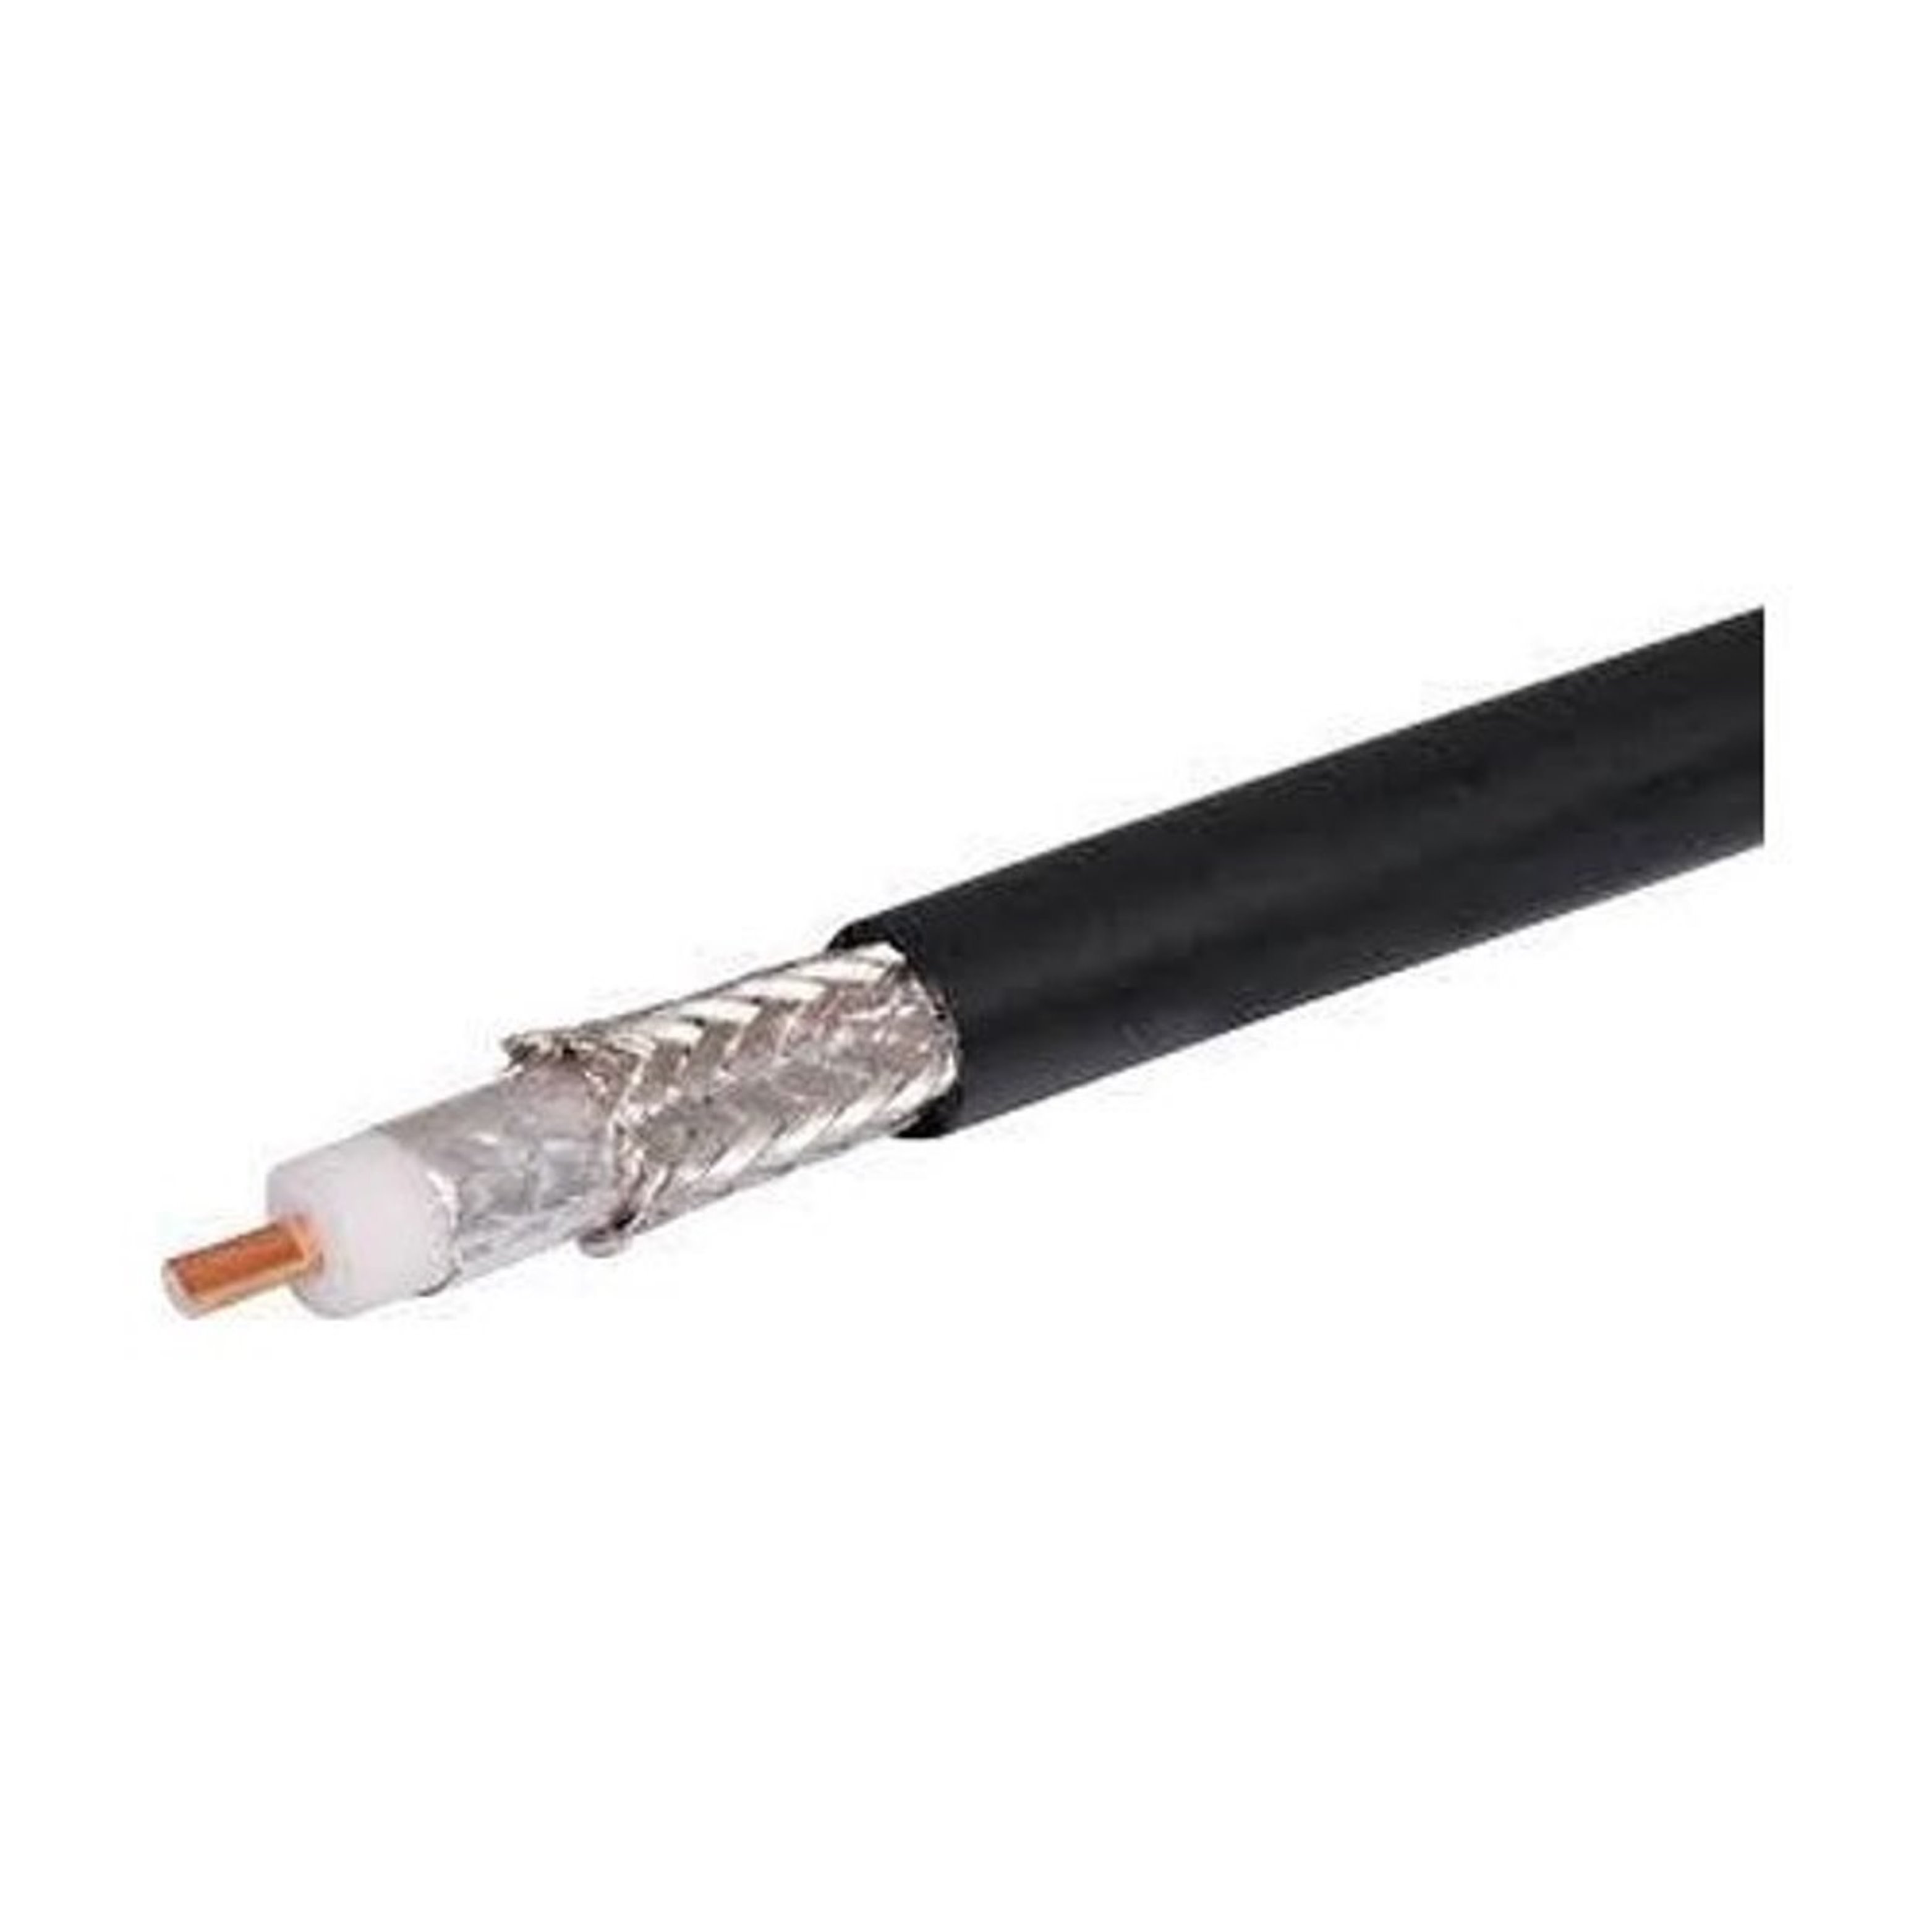 HLF 400 Coaxial Cable Black CCA